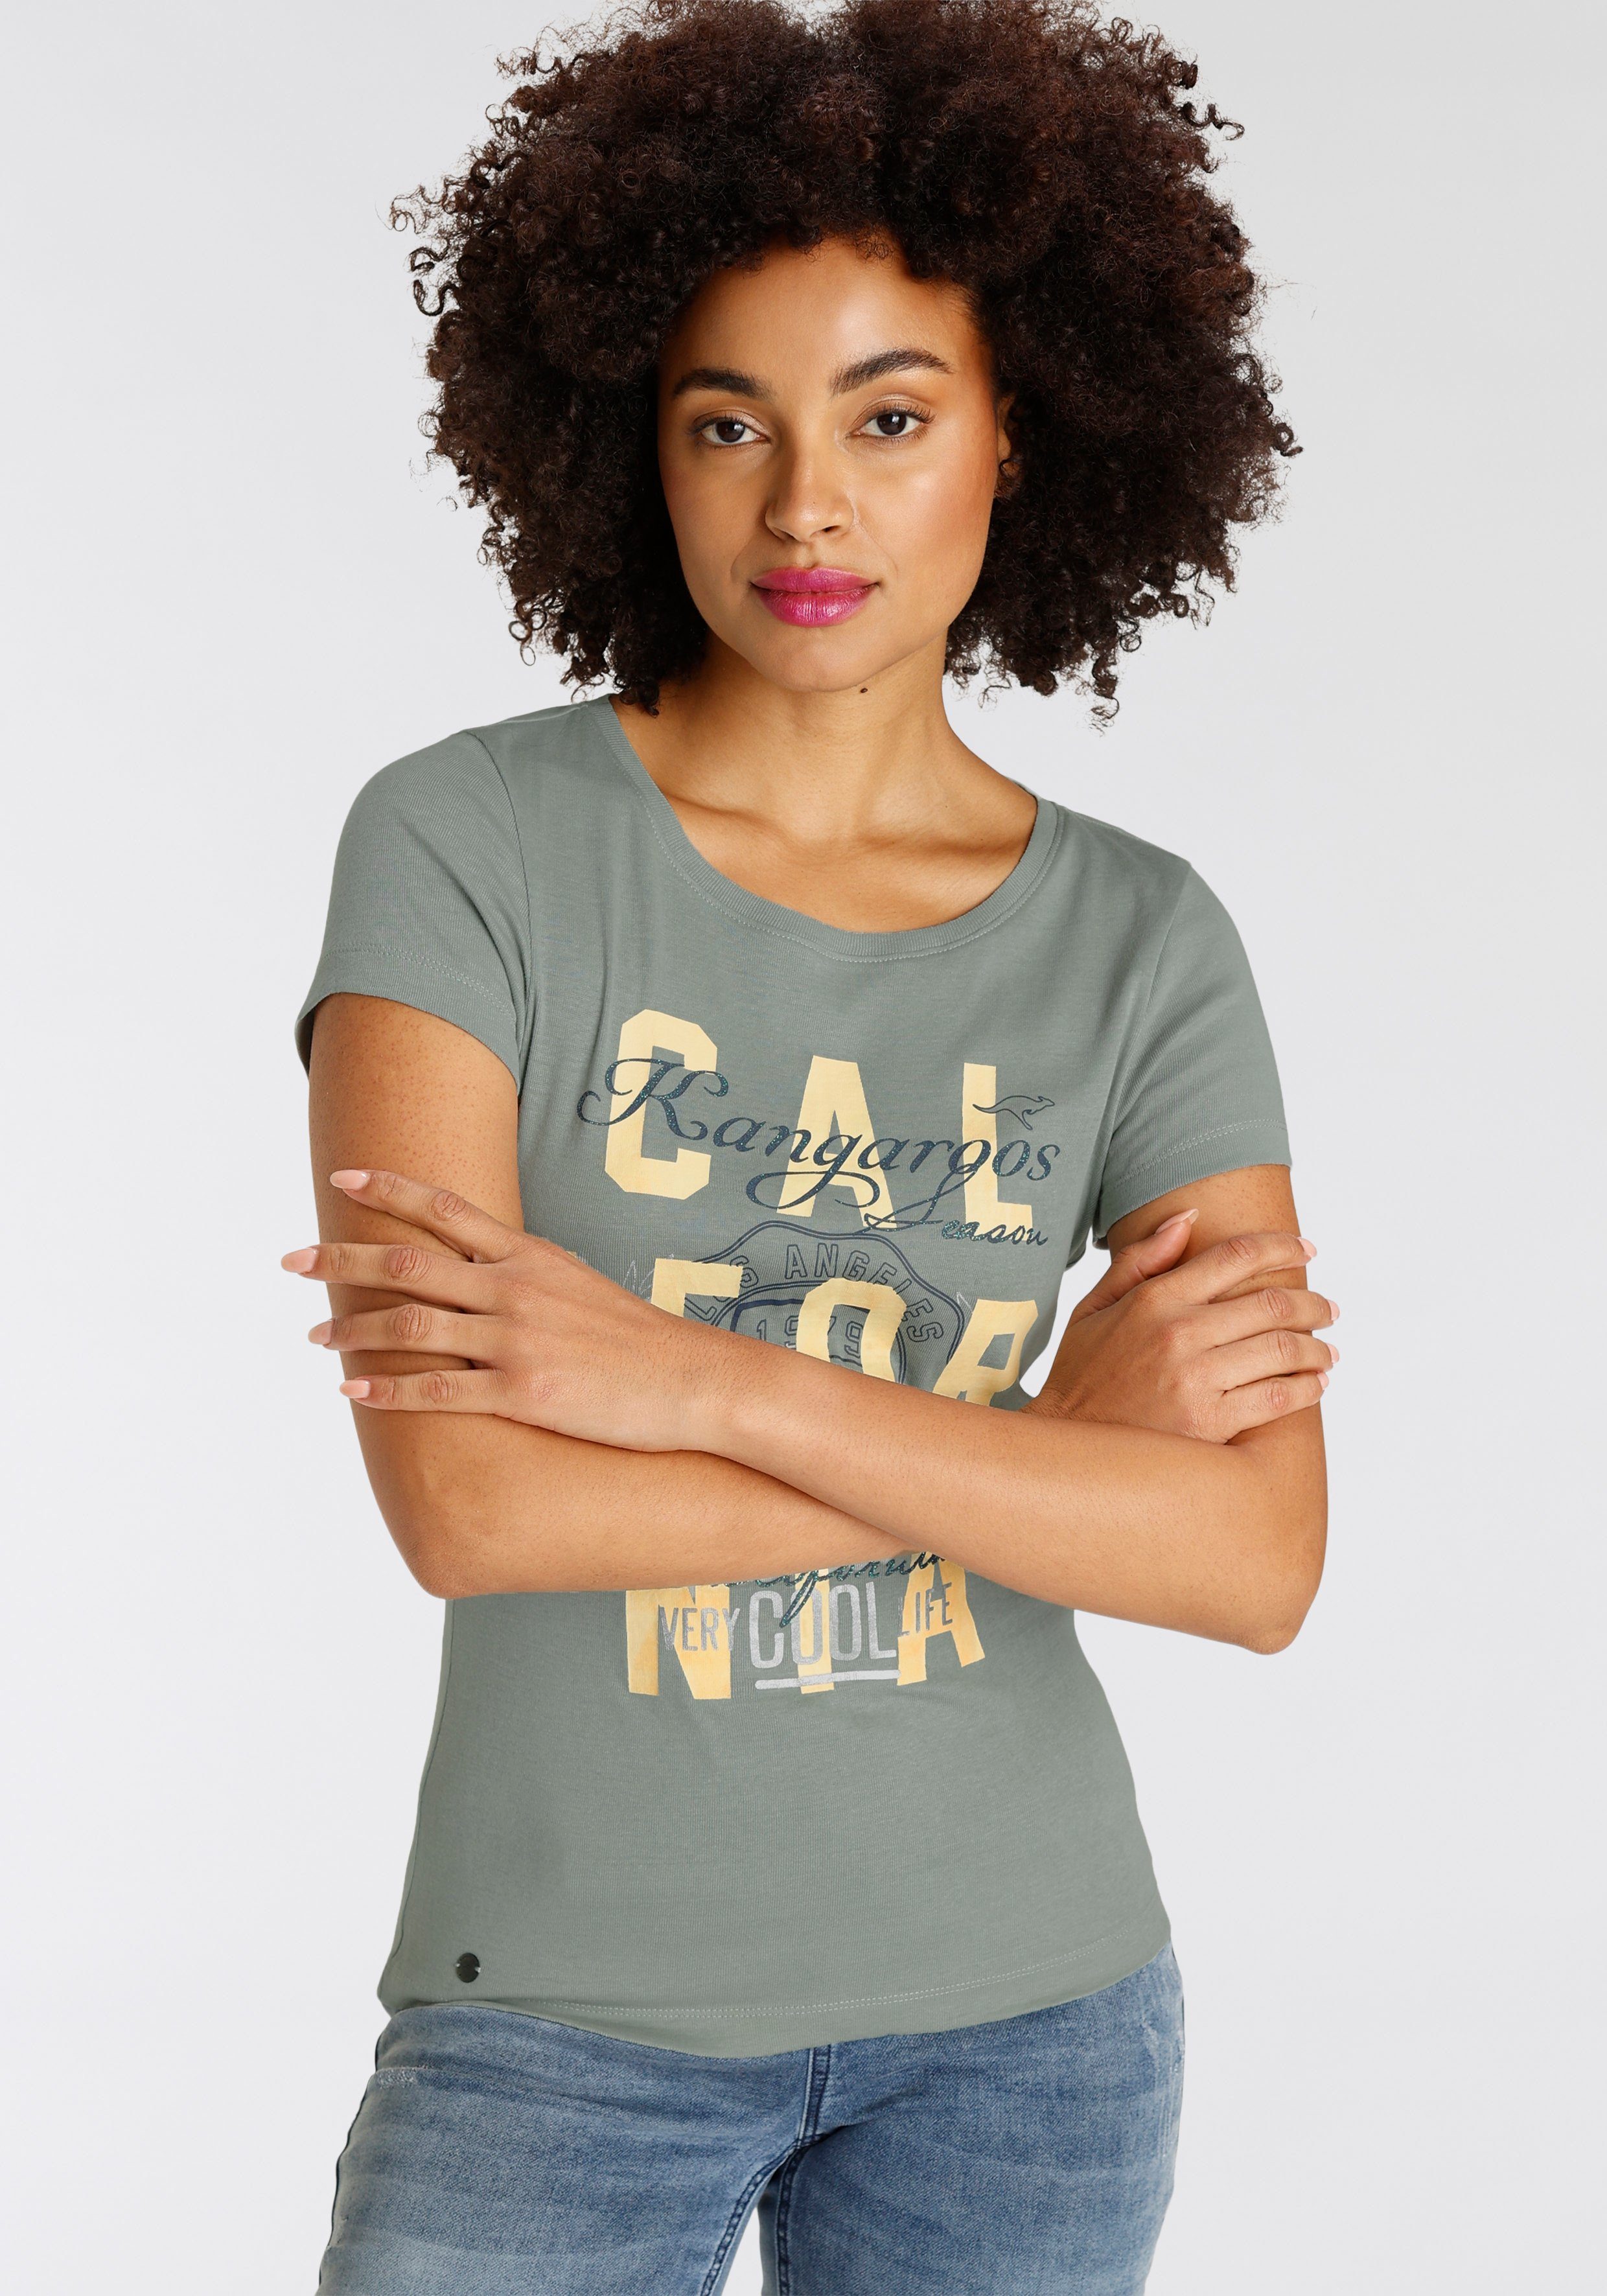 KangaROOS Print-Shirt mit Logodruck im khakigrau California-Style KOLLEKTION NEUE 